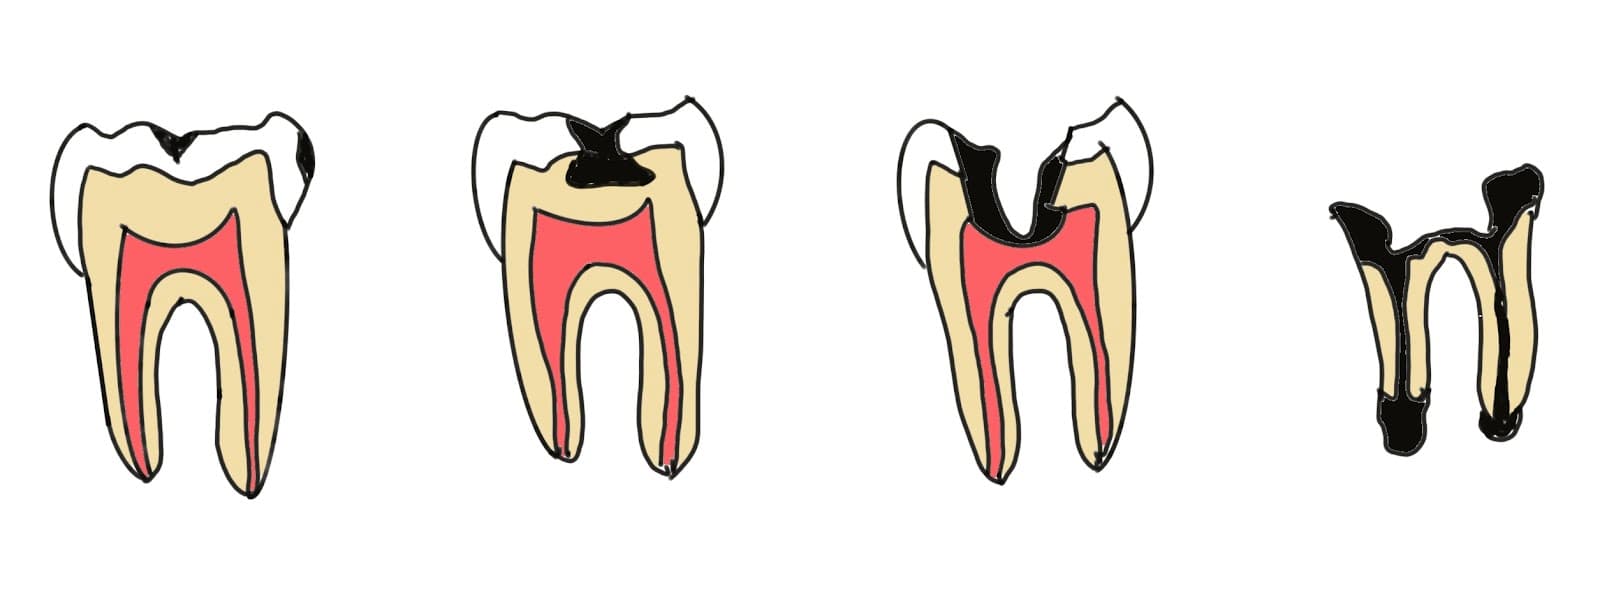 虫歯の進行度を表したイラスト